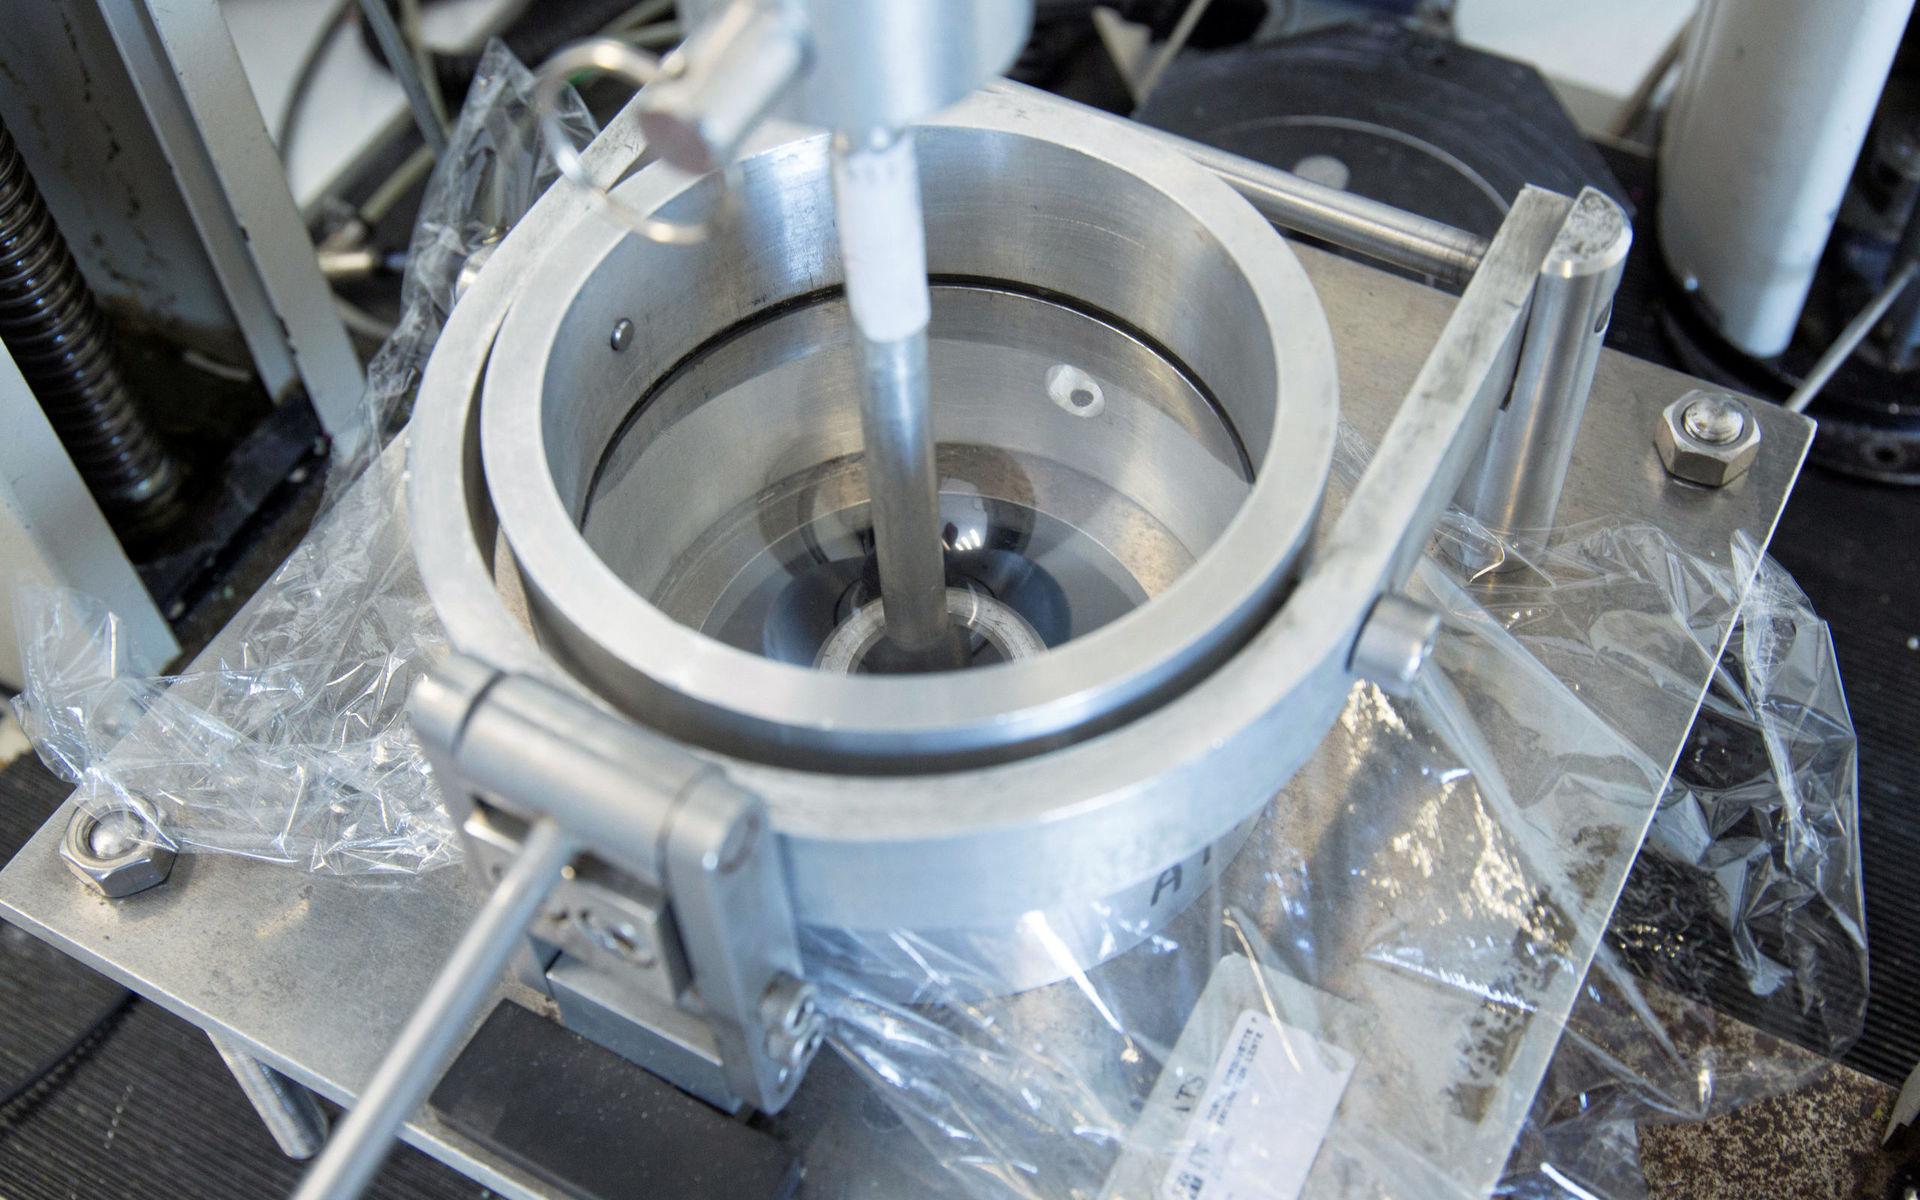 Laboratoriet mäter penetrationsmotståndet genom att pressa ett trubbigt instrument genom plastfolien tills den penetreras.